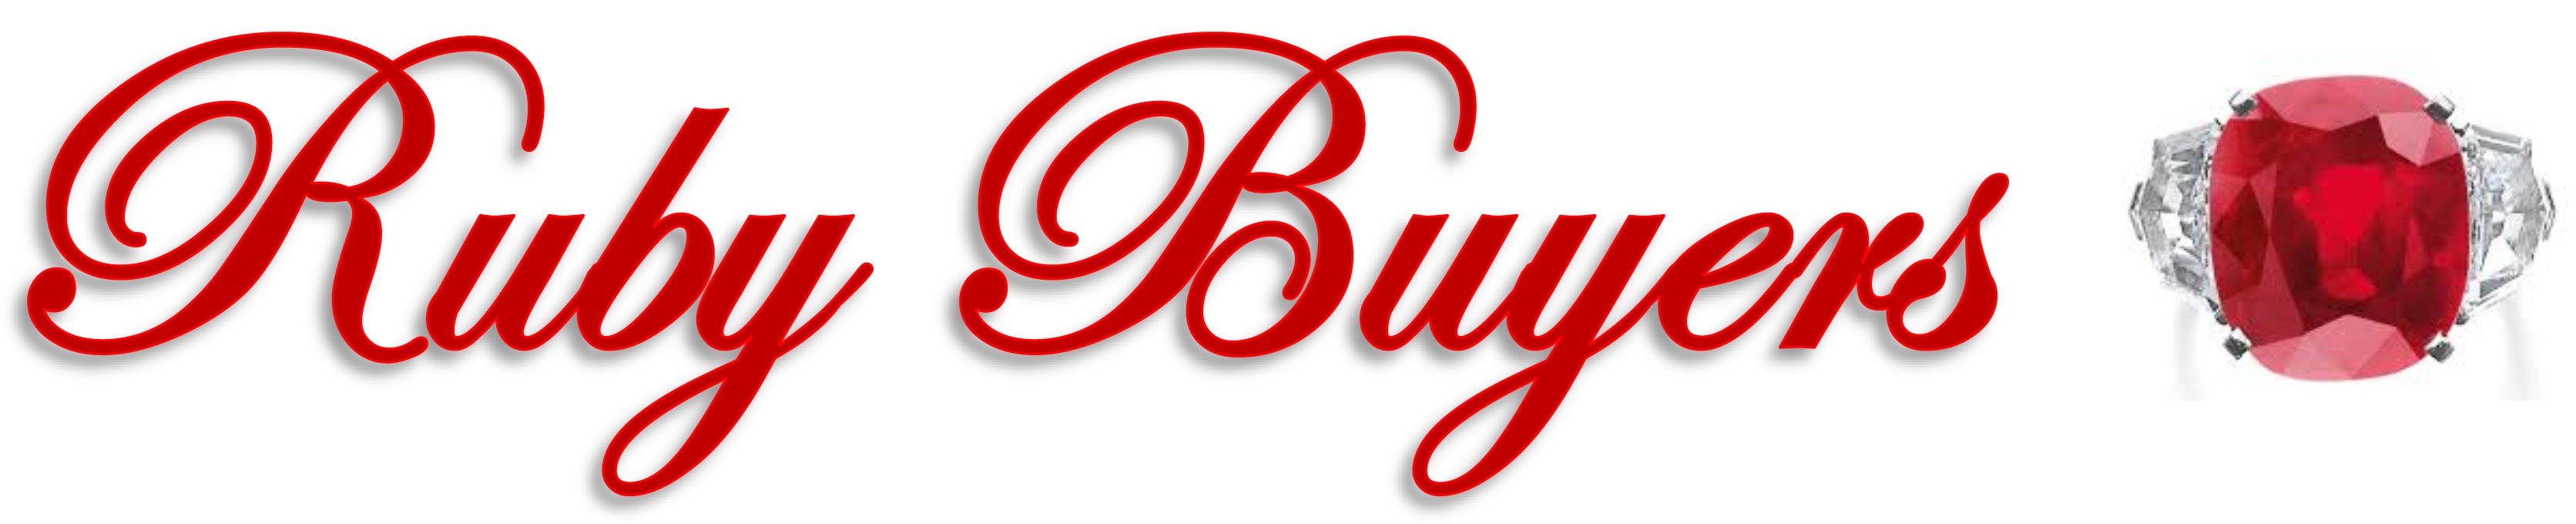 Ruby Buyers | Ruby Jewelry Buyers.